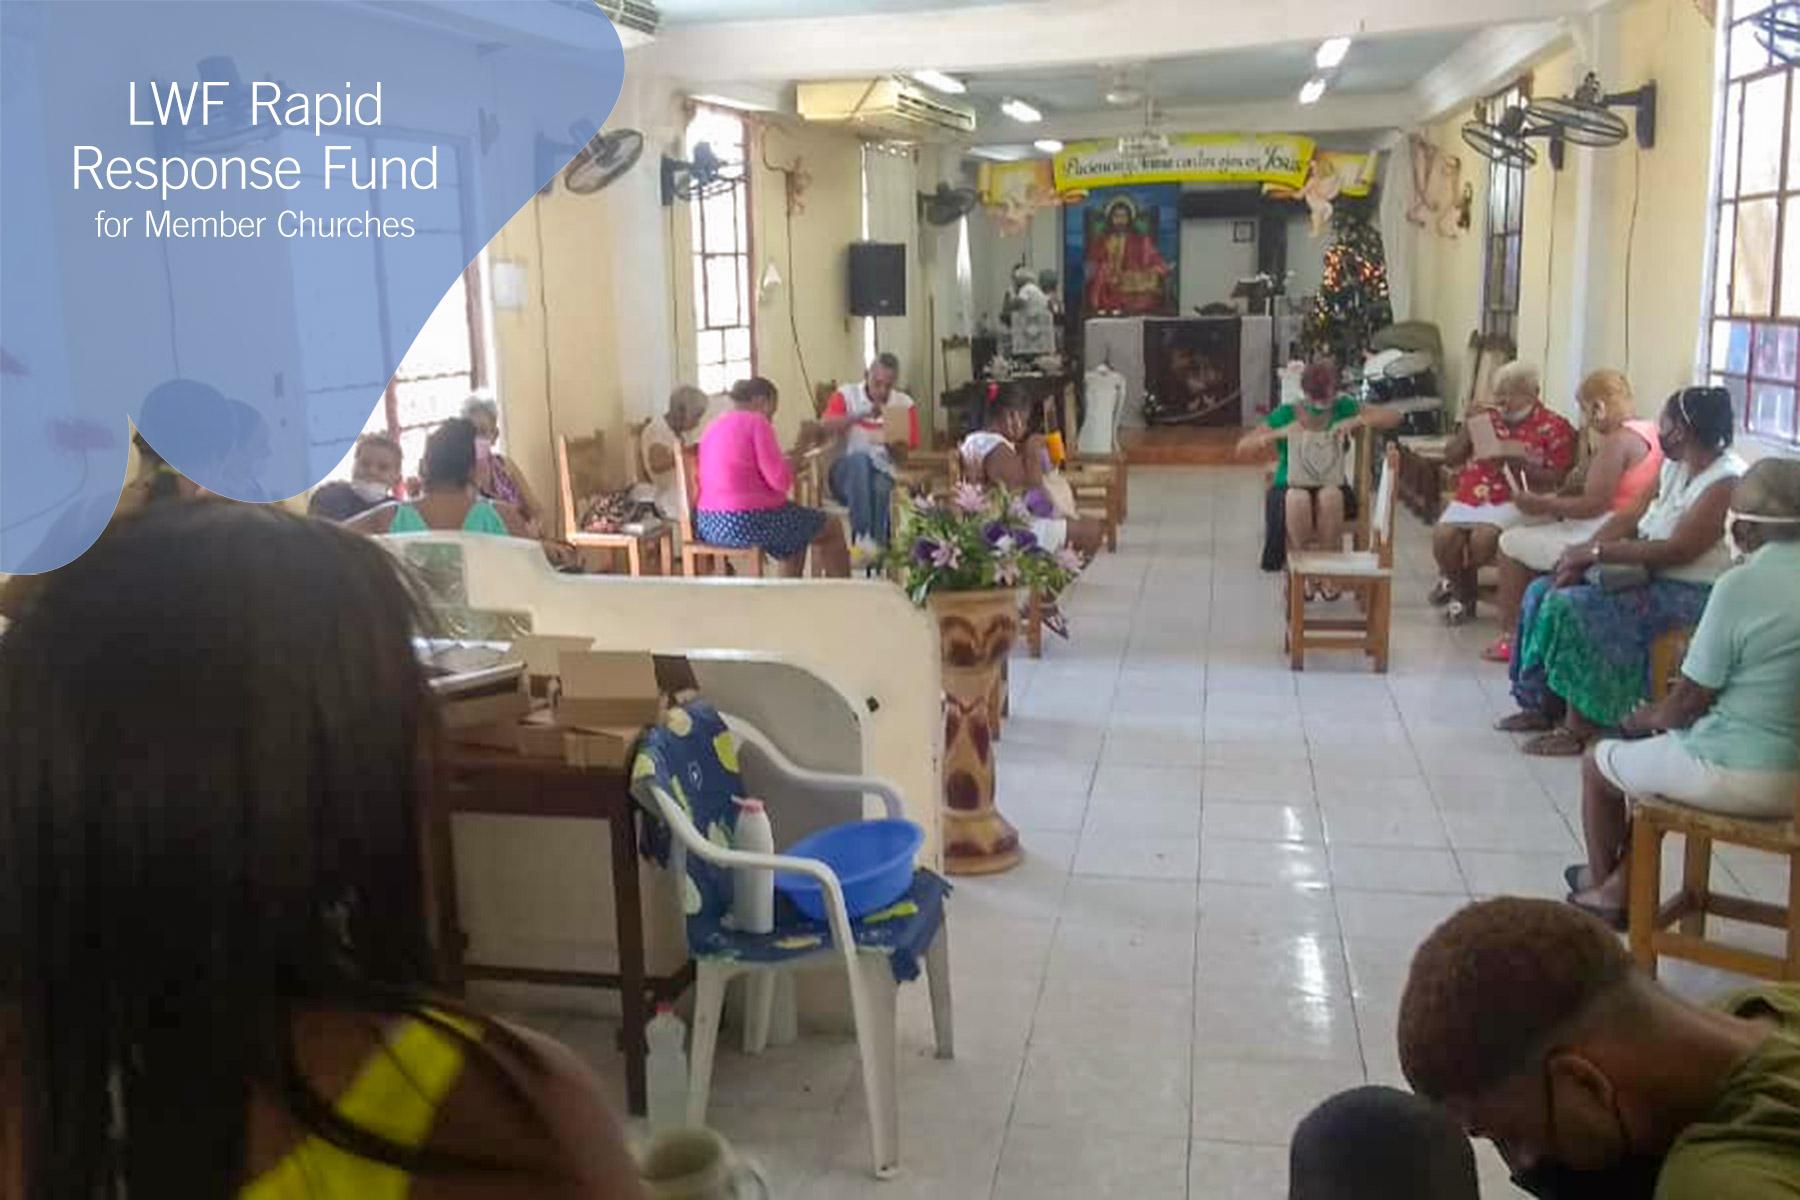 Im Rahmen eines der COVID-19-Hilfsprogramme hat die Lutherische Kirche in Kuba ein Gemeinschafts-Mittagessen für 320 Menschen mit Mitgliedern aus den Gemeinden Cristo Vive, Cristo Redentor, Nuestro Salvador und Aposento Alto veranstaltet. Foto: UECCLS